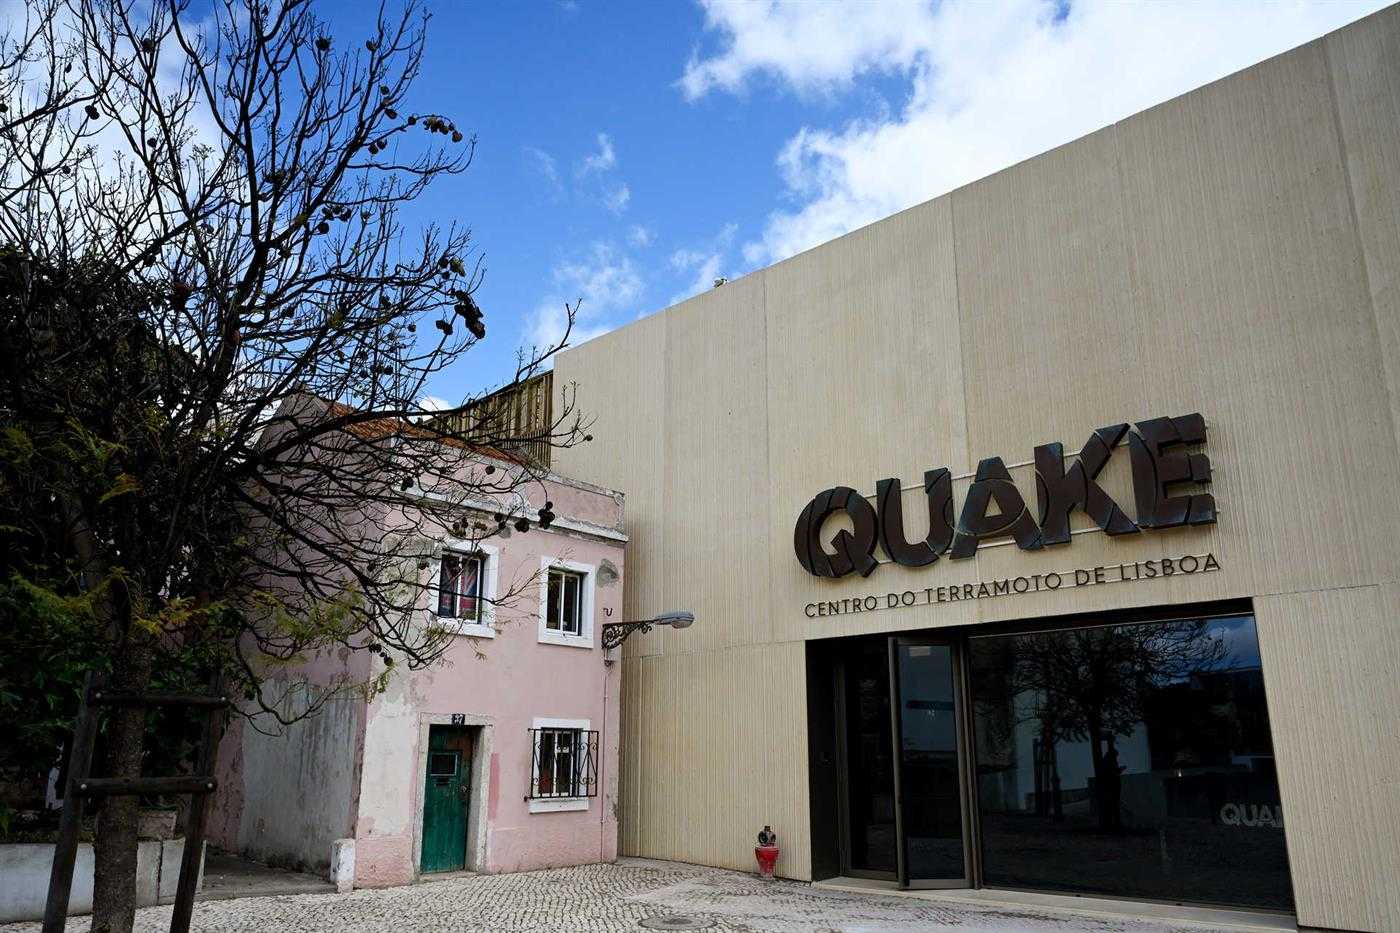 Um novo museu em Lisboa sobre o quake de 1755?!!